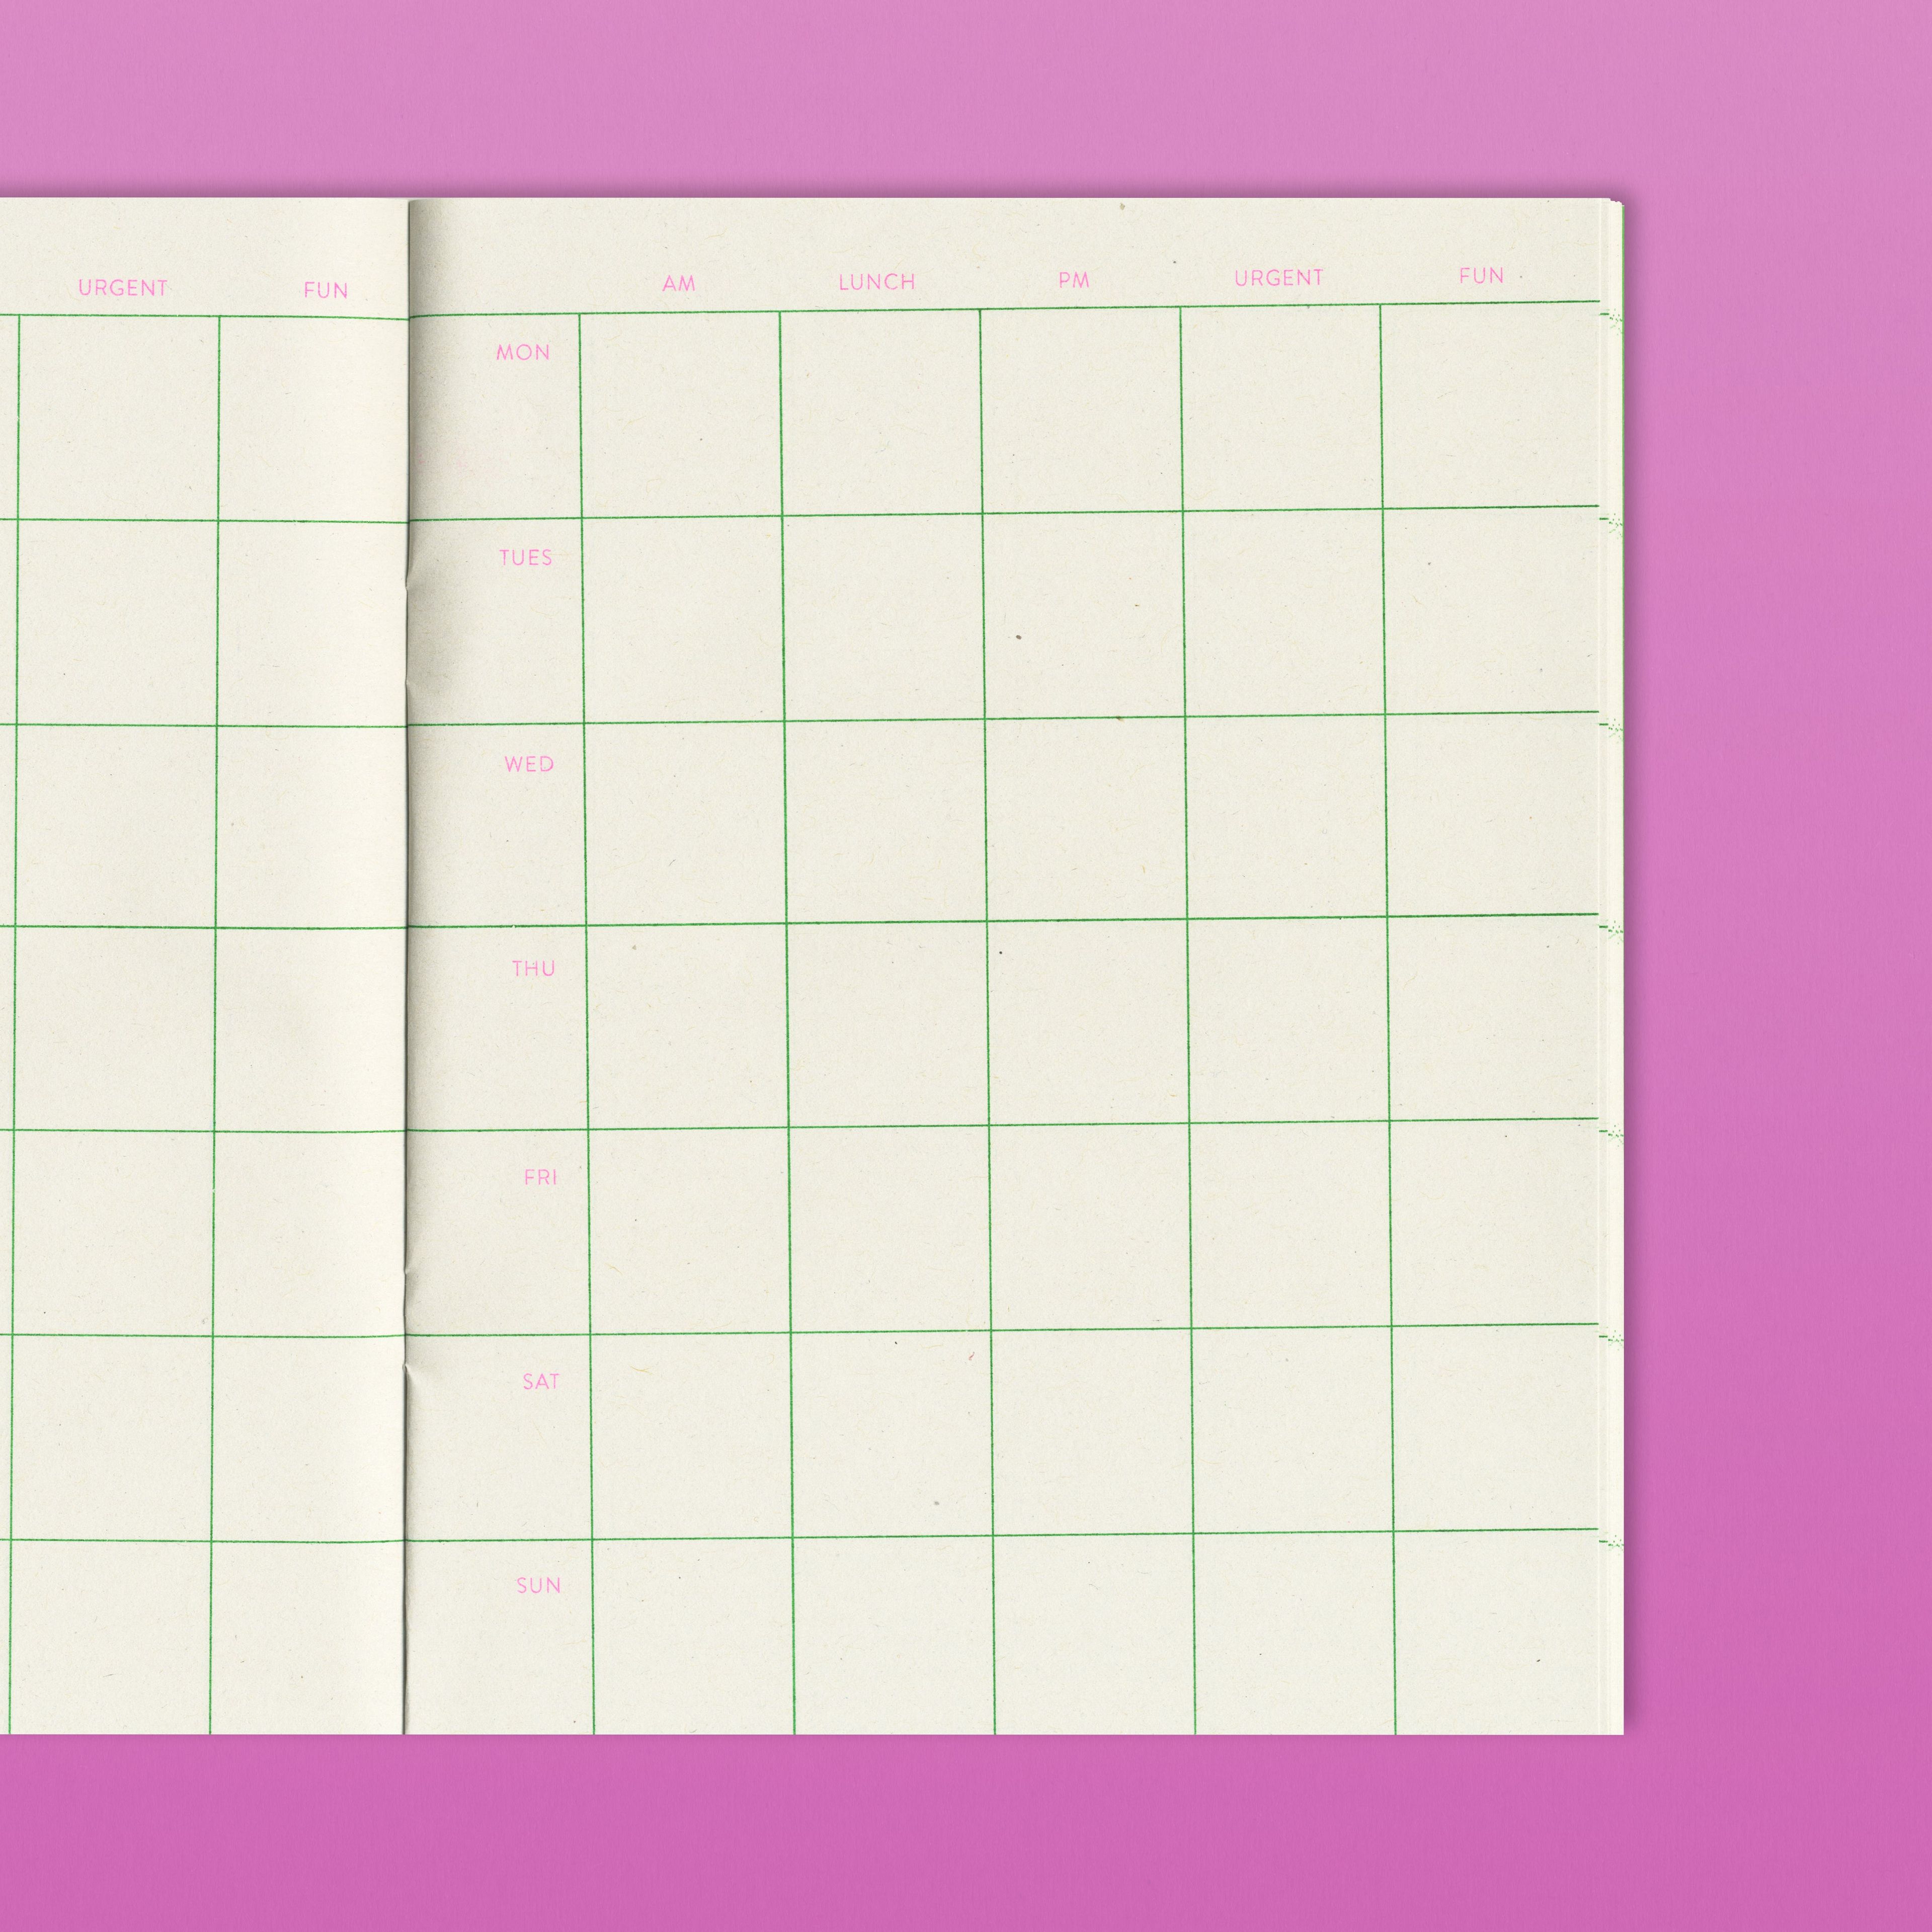 Quaderno No.2 - Week Planner Notebook